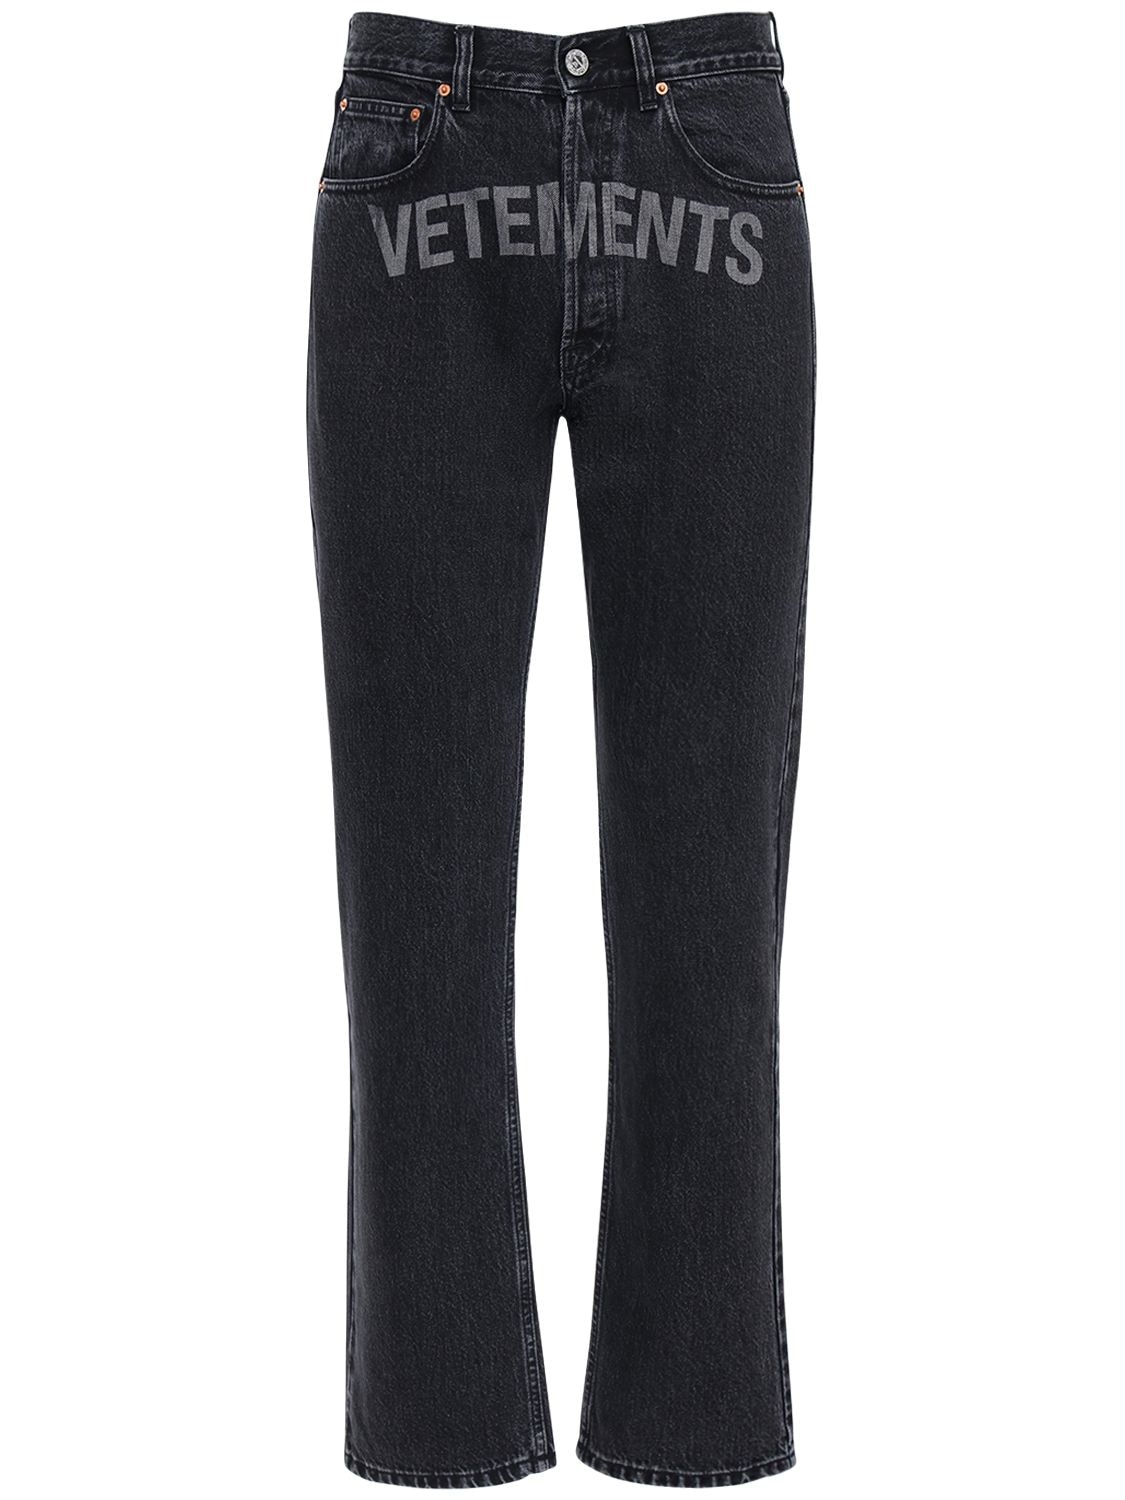 vetements black jeans